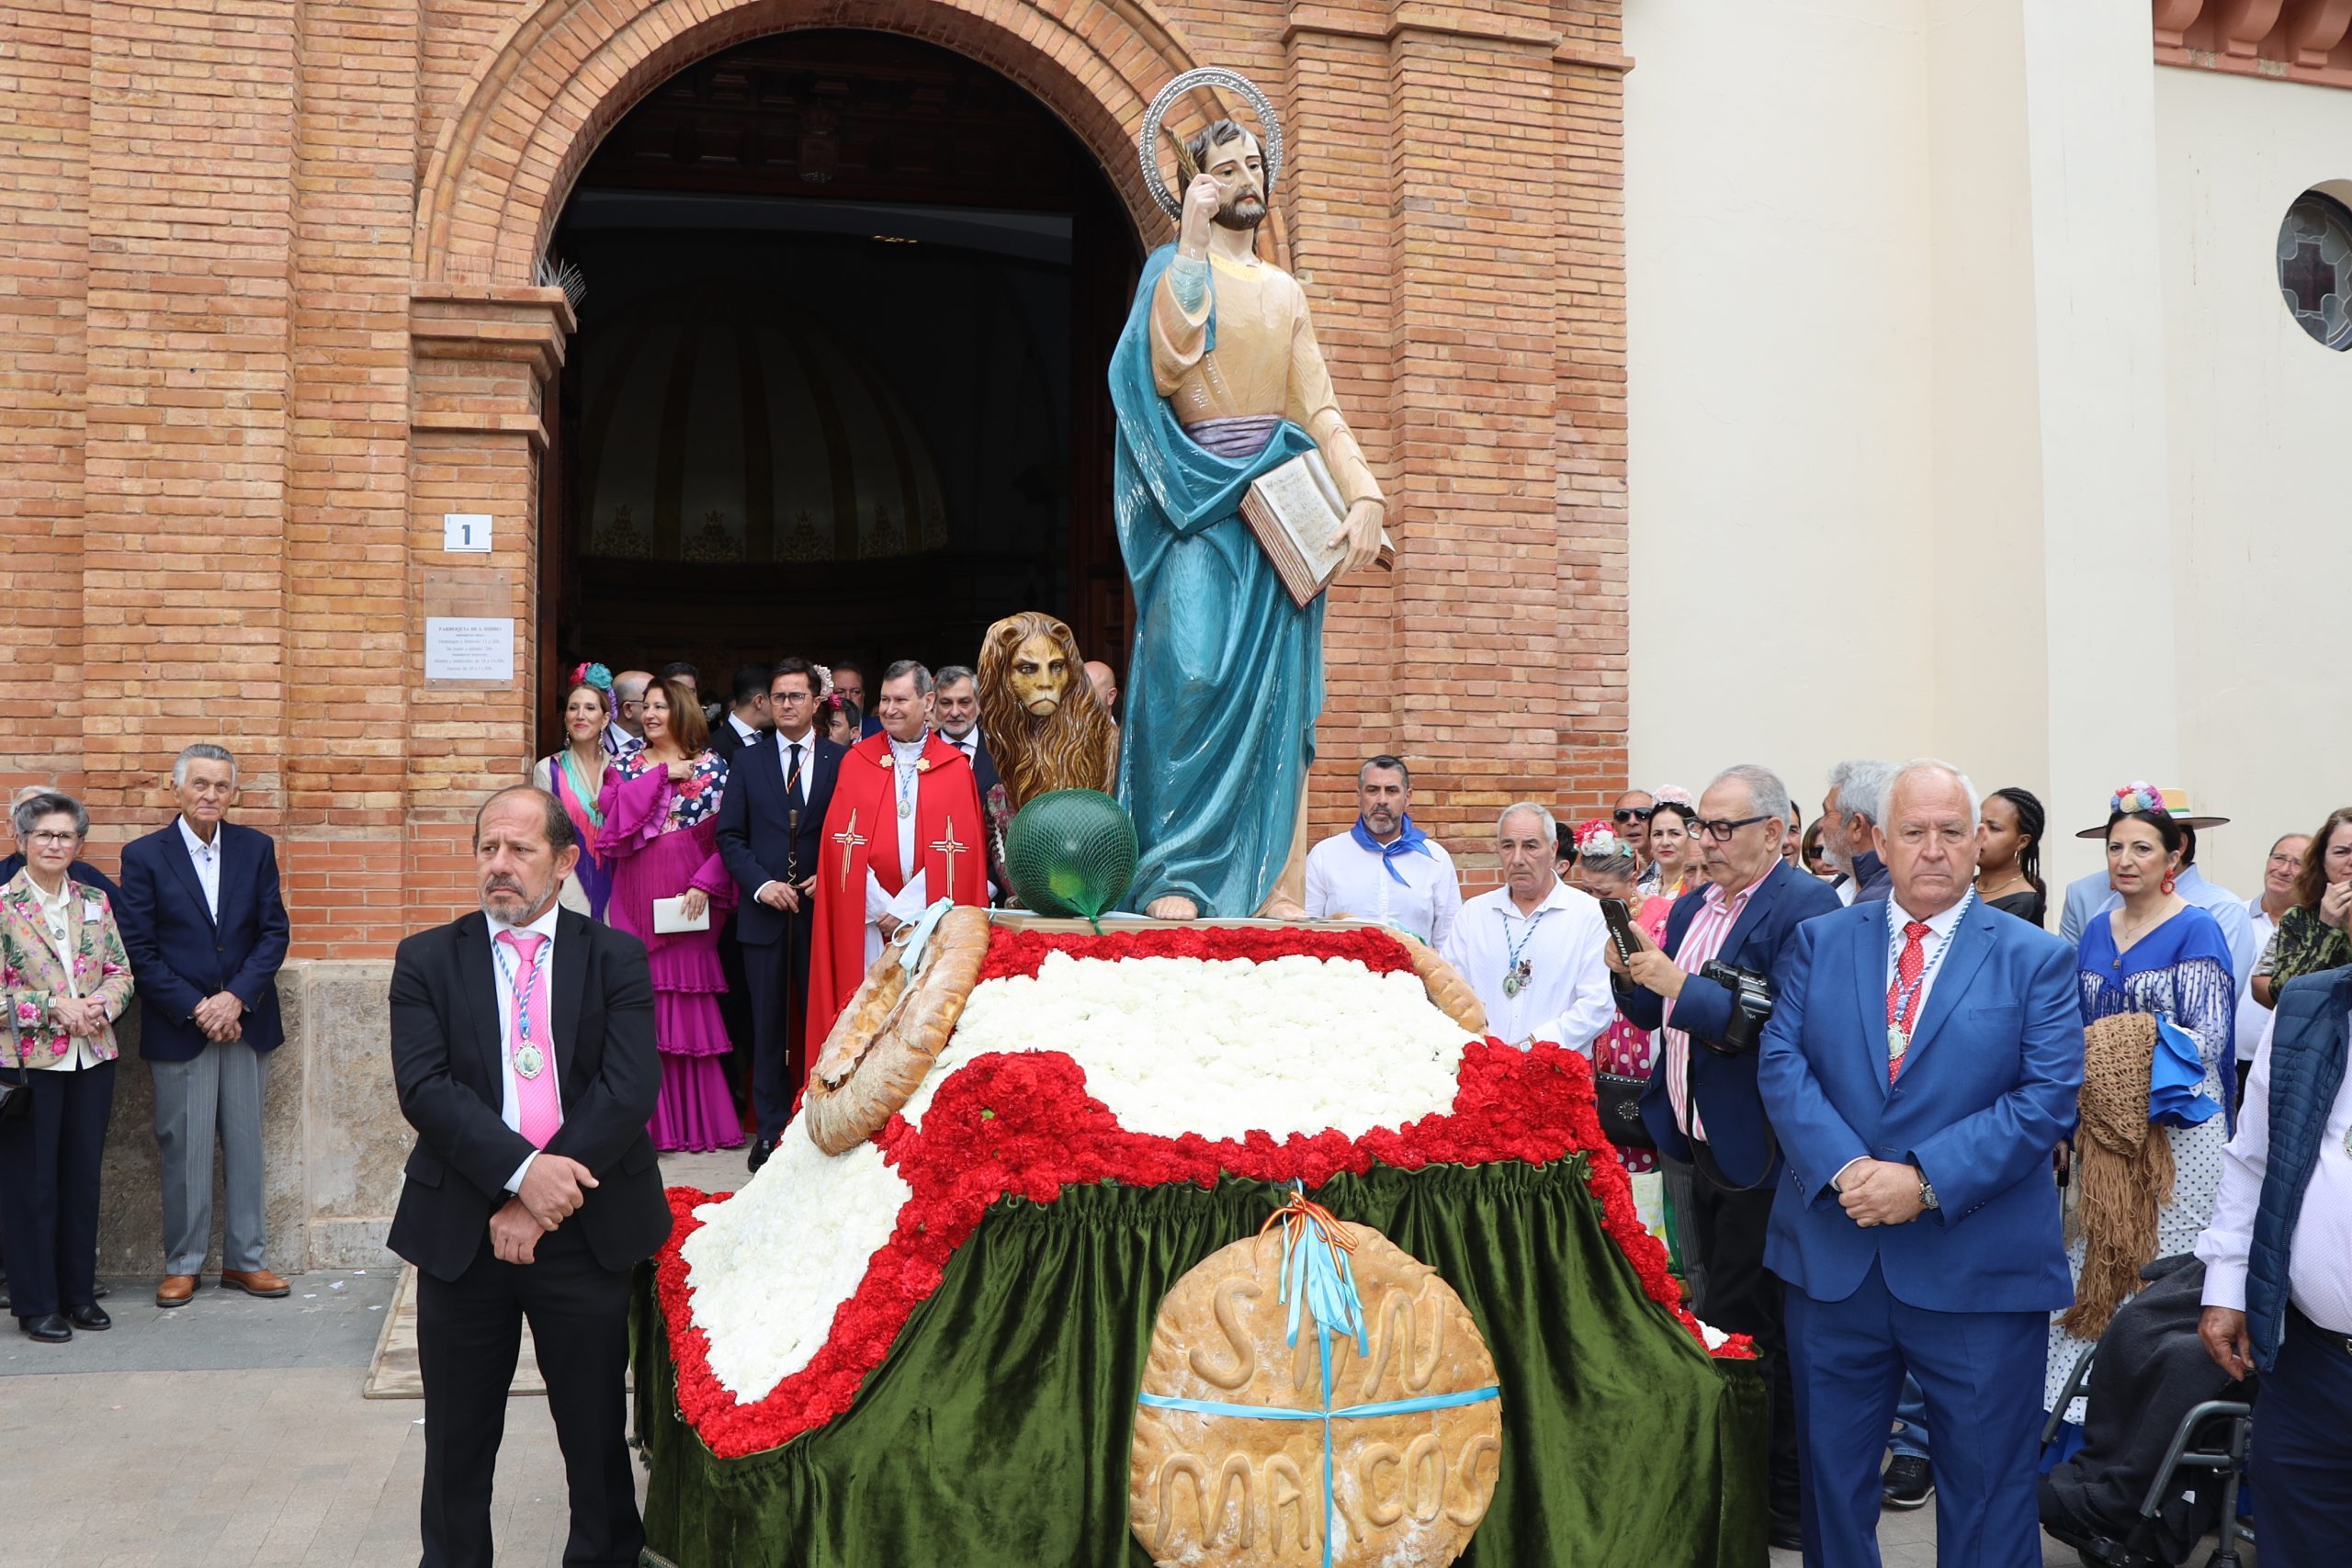 San Marcos recorre las calles de El Ejido durante su Procesión-Romería mostrando la singularidad e identidad de esta ‘Fiesta de Interés Turístico de Andalucía’